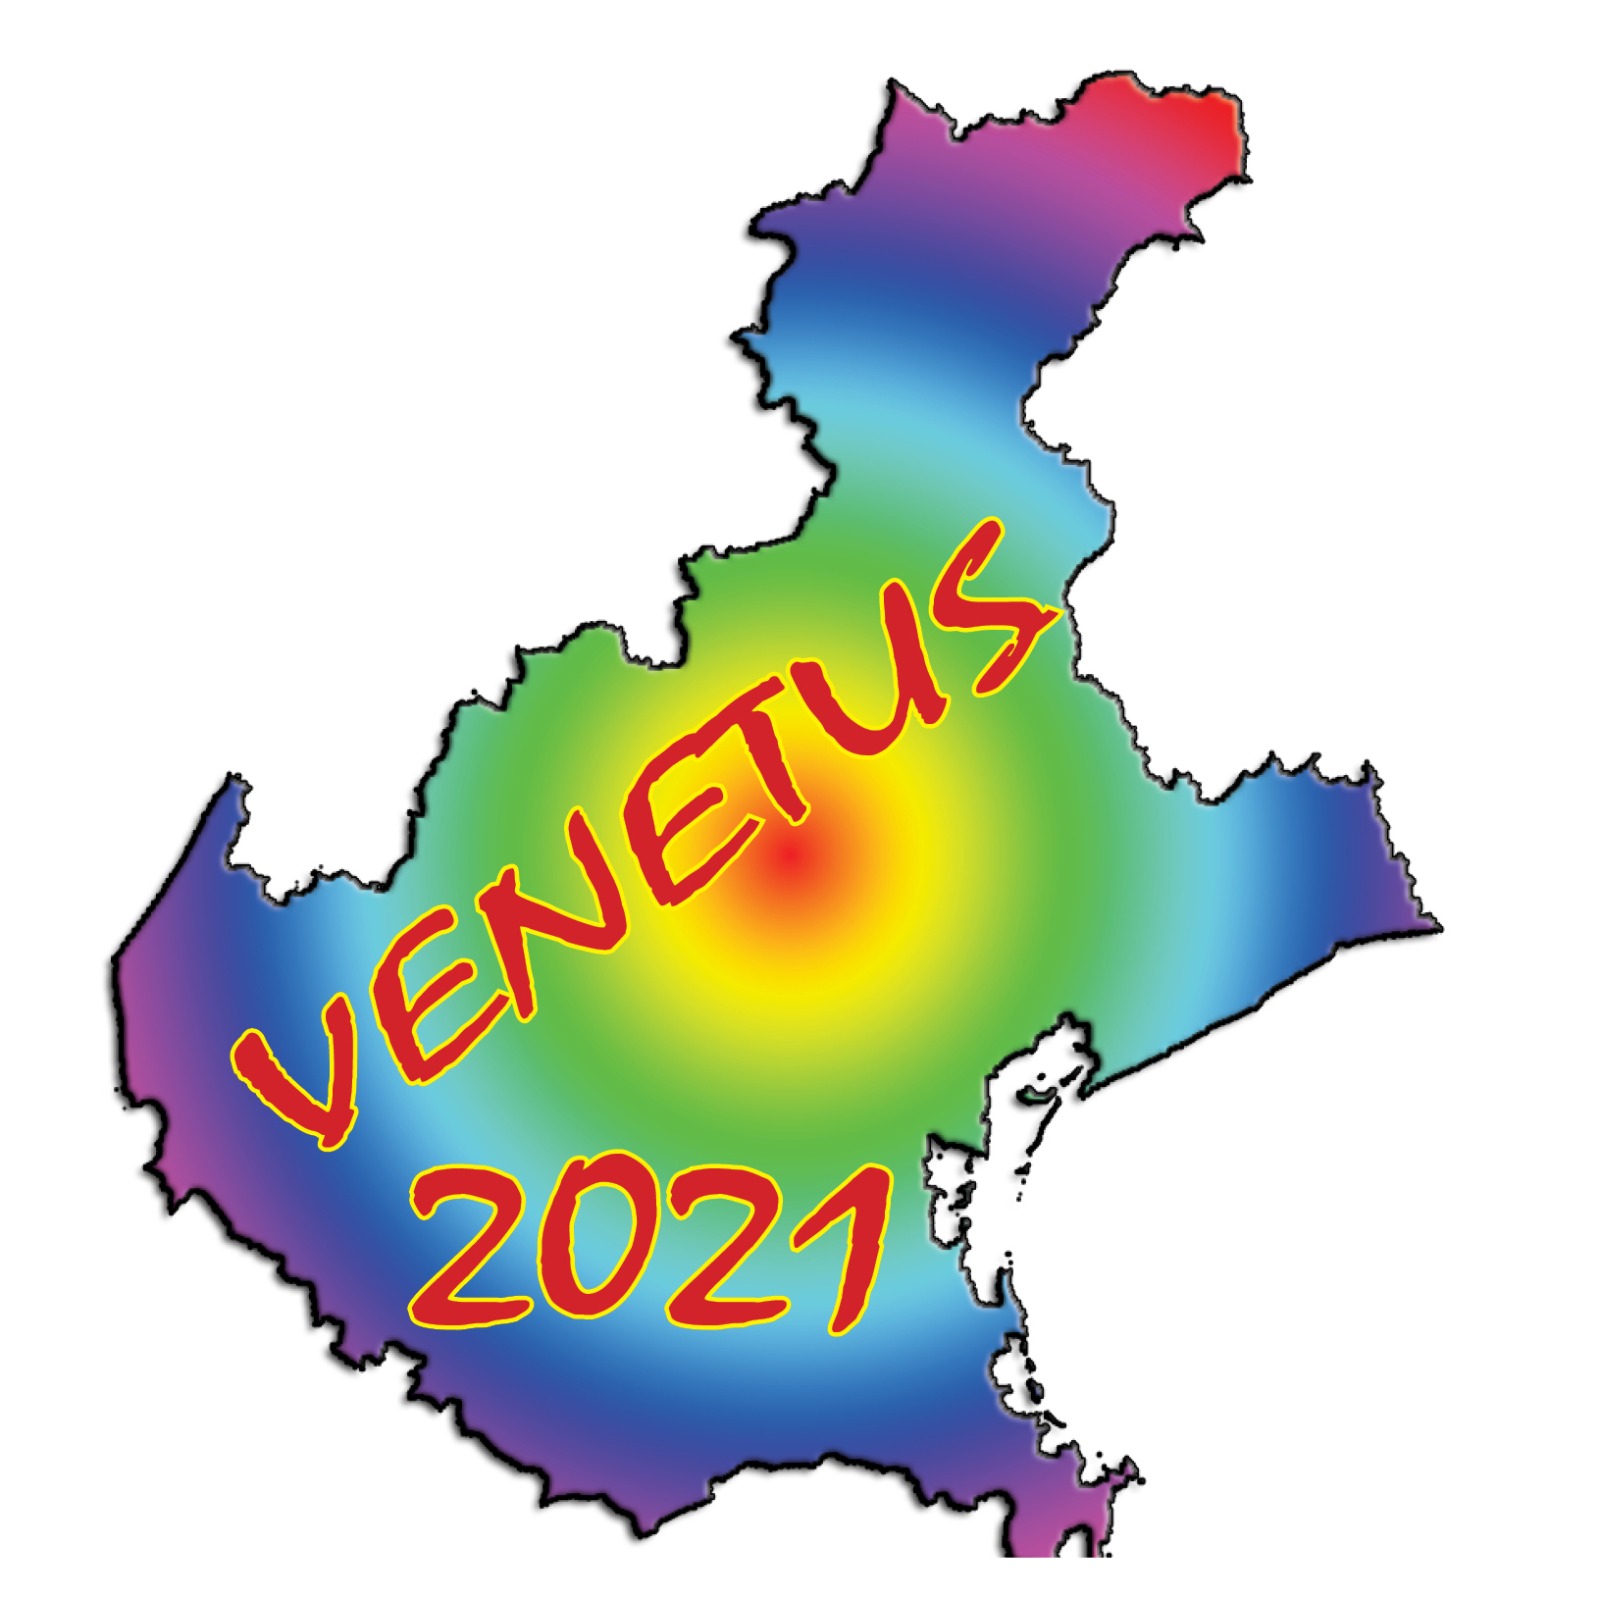 Venetus 2021 marchio